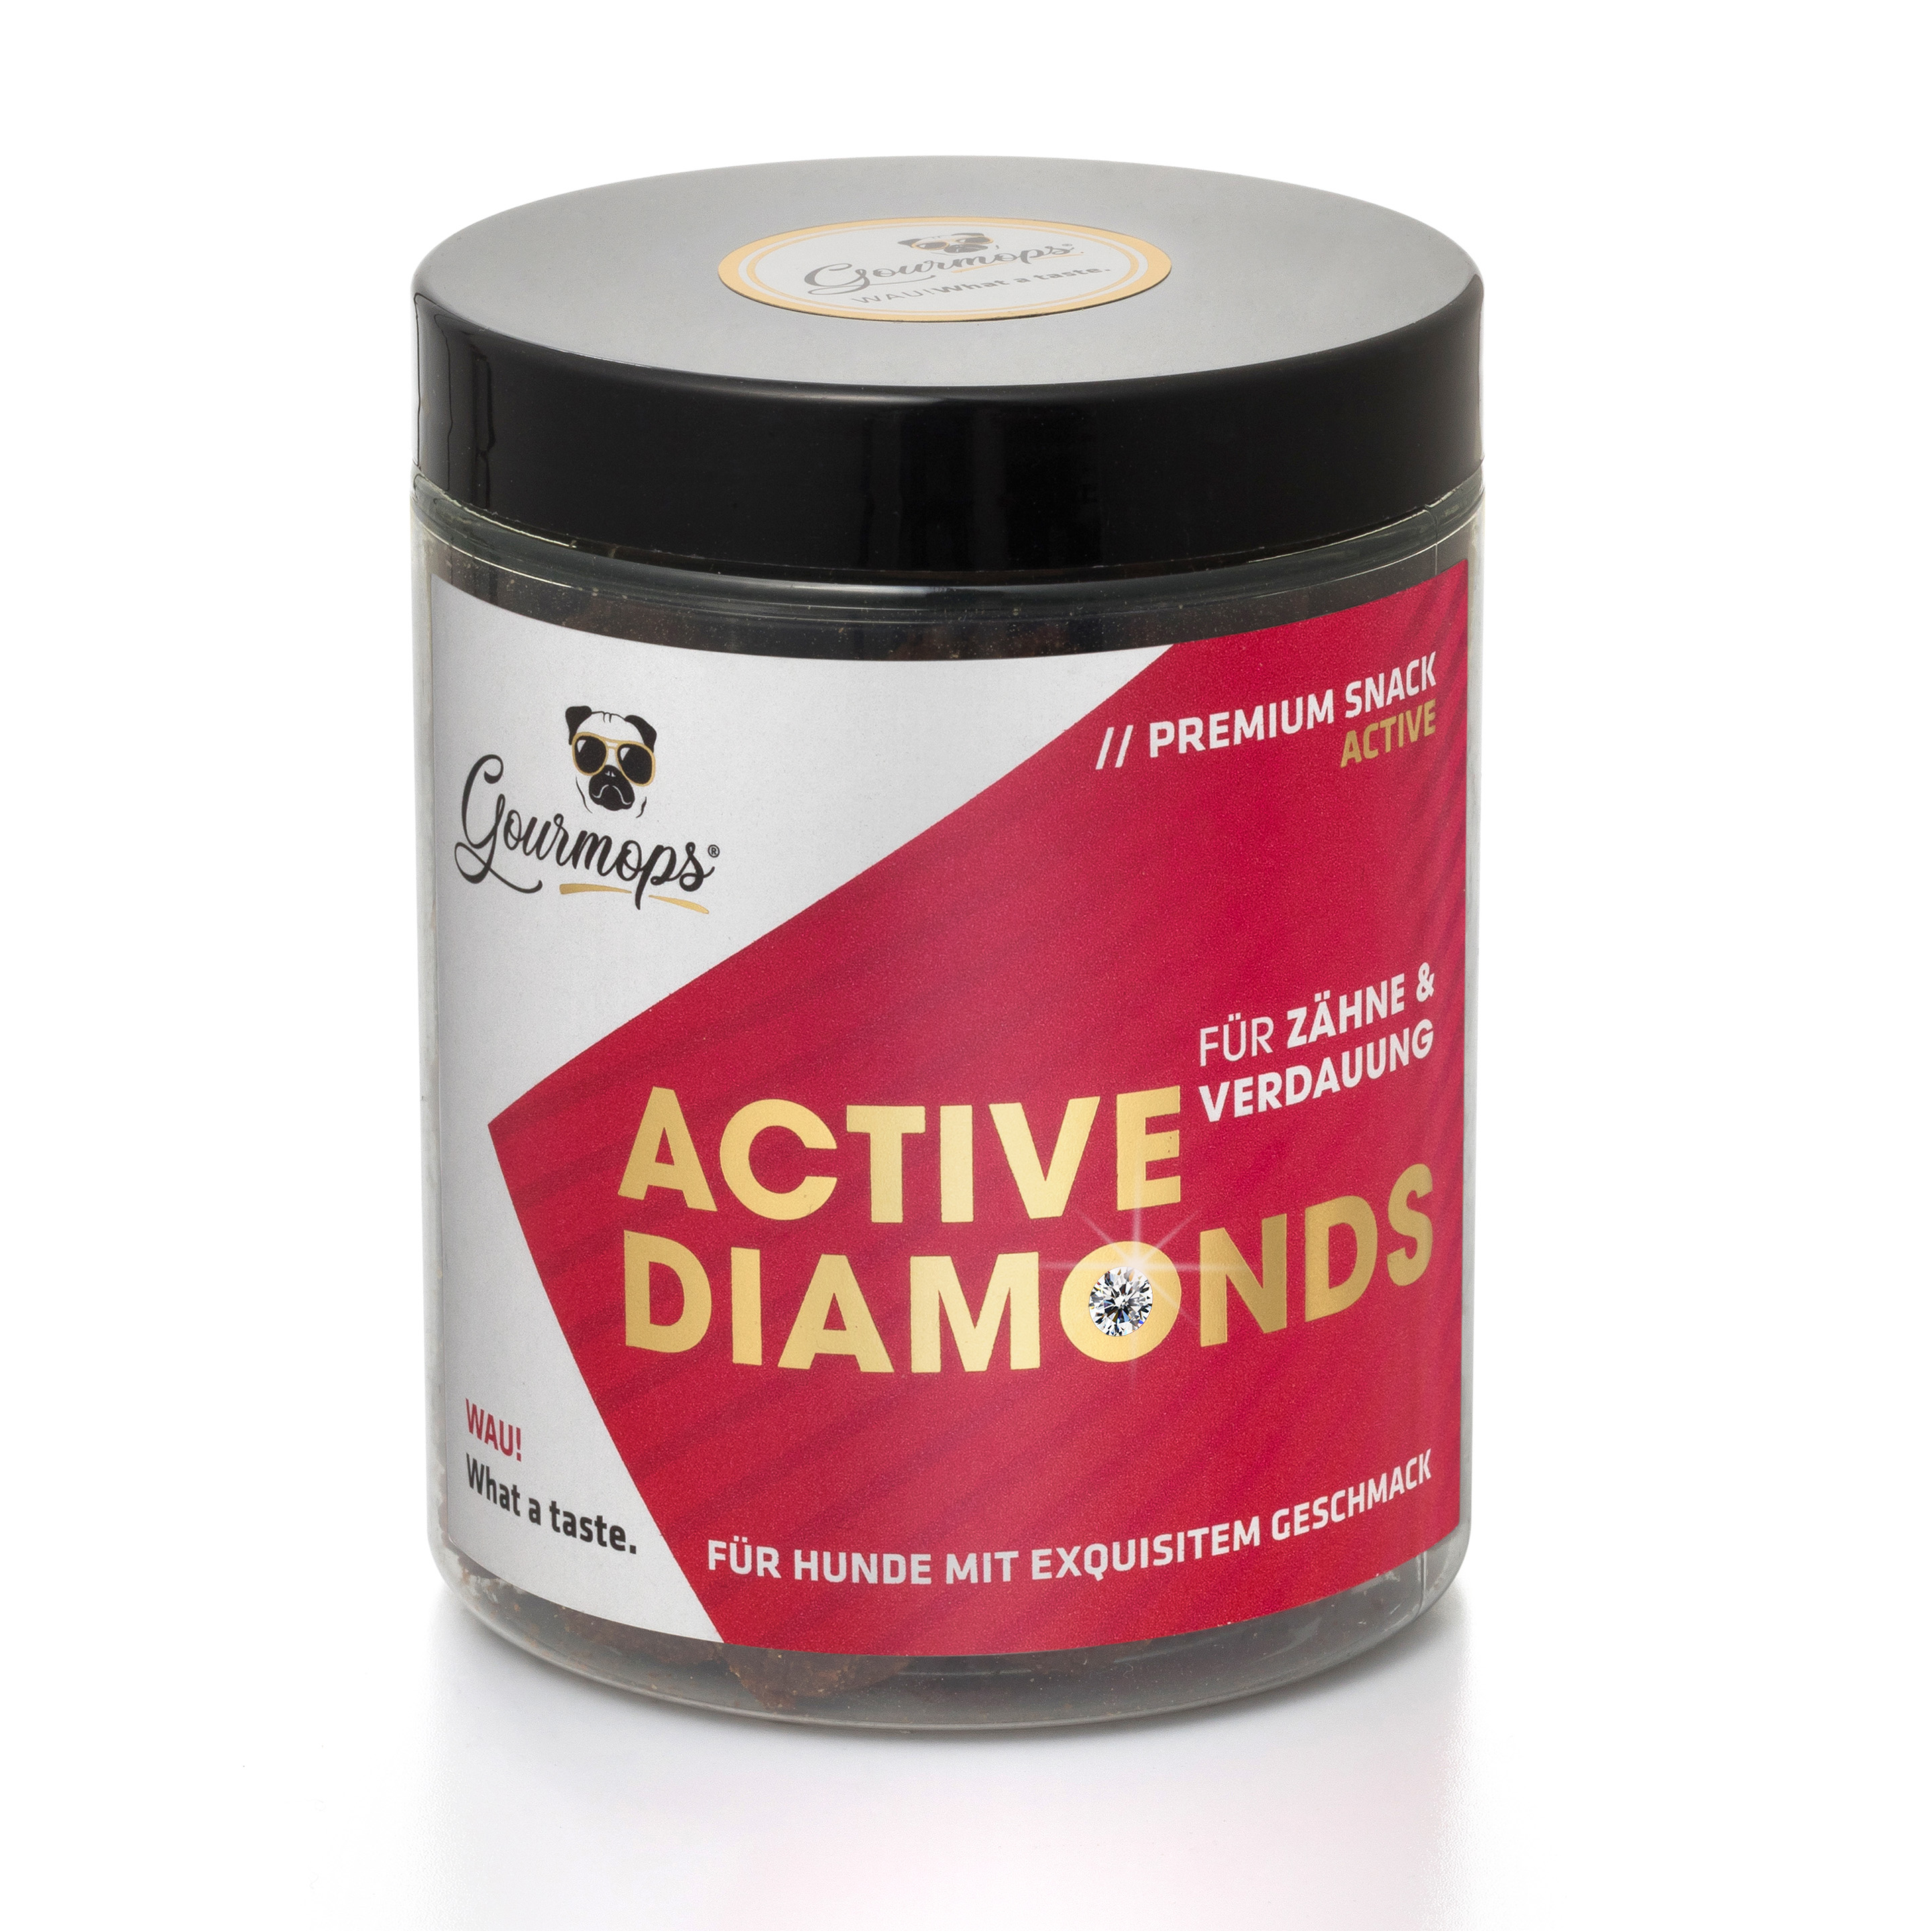 Active Diamonds - Für Zähne und Verdauung